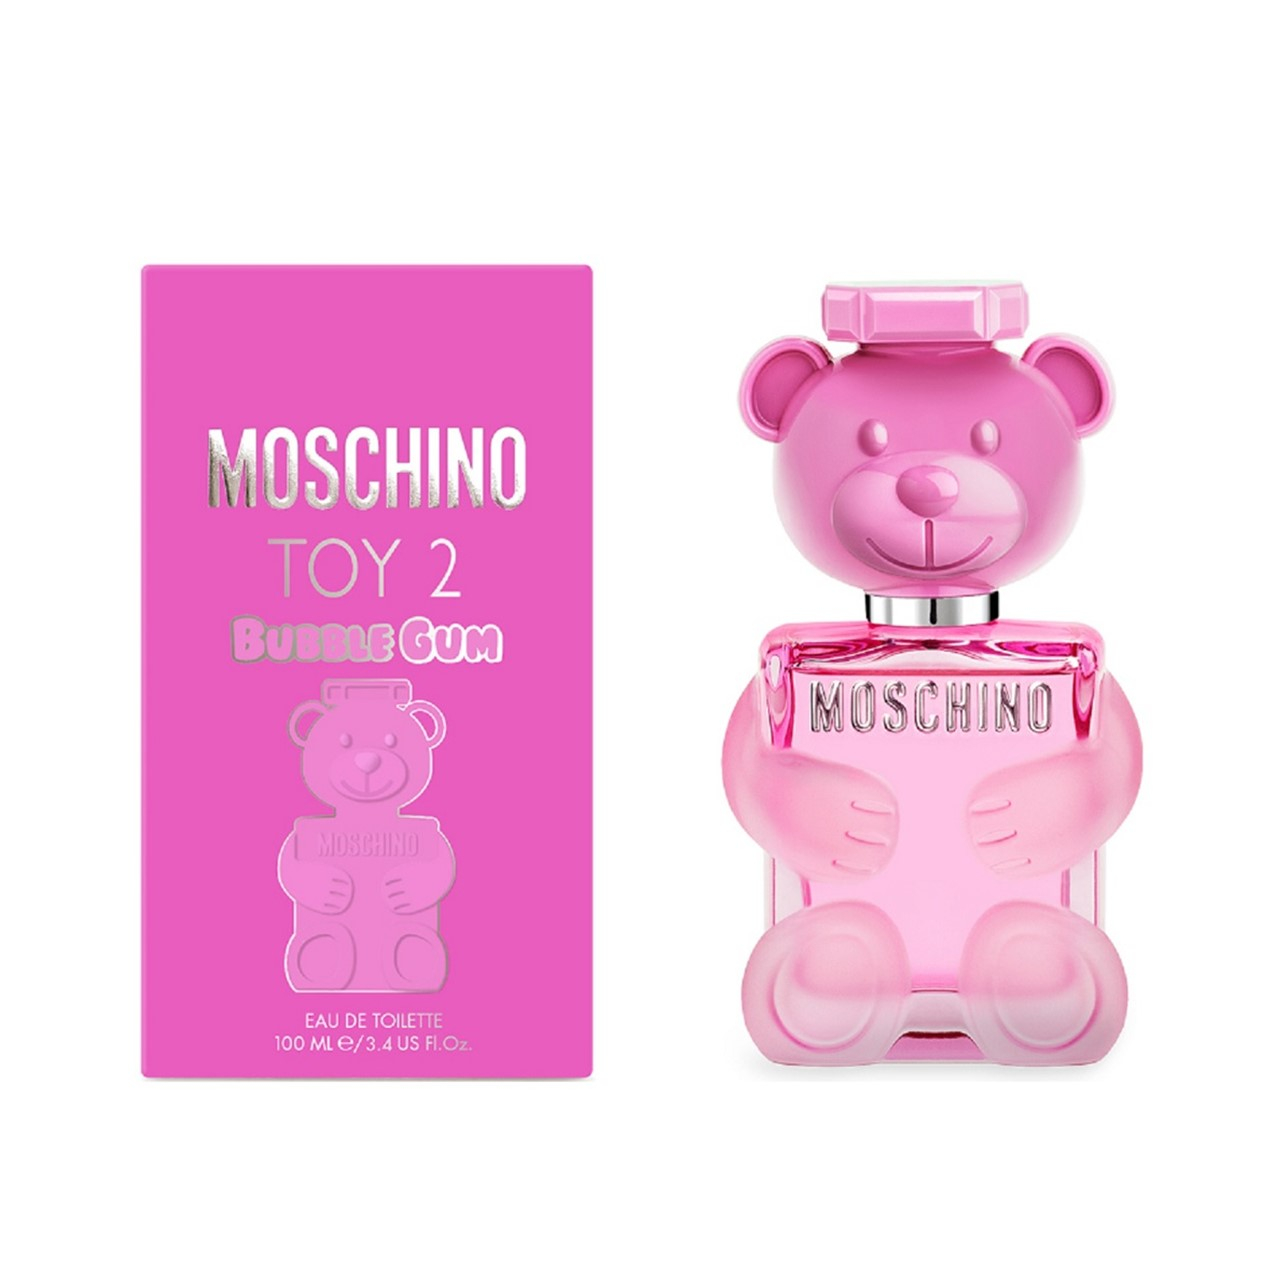 Moschino Toy 2 Bubble Gum Eau de Toilette 100ml